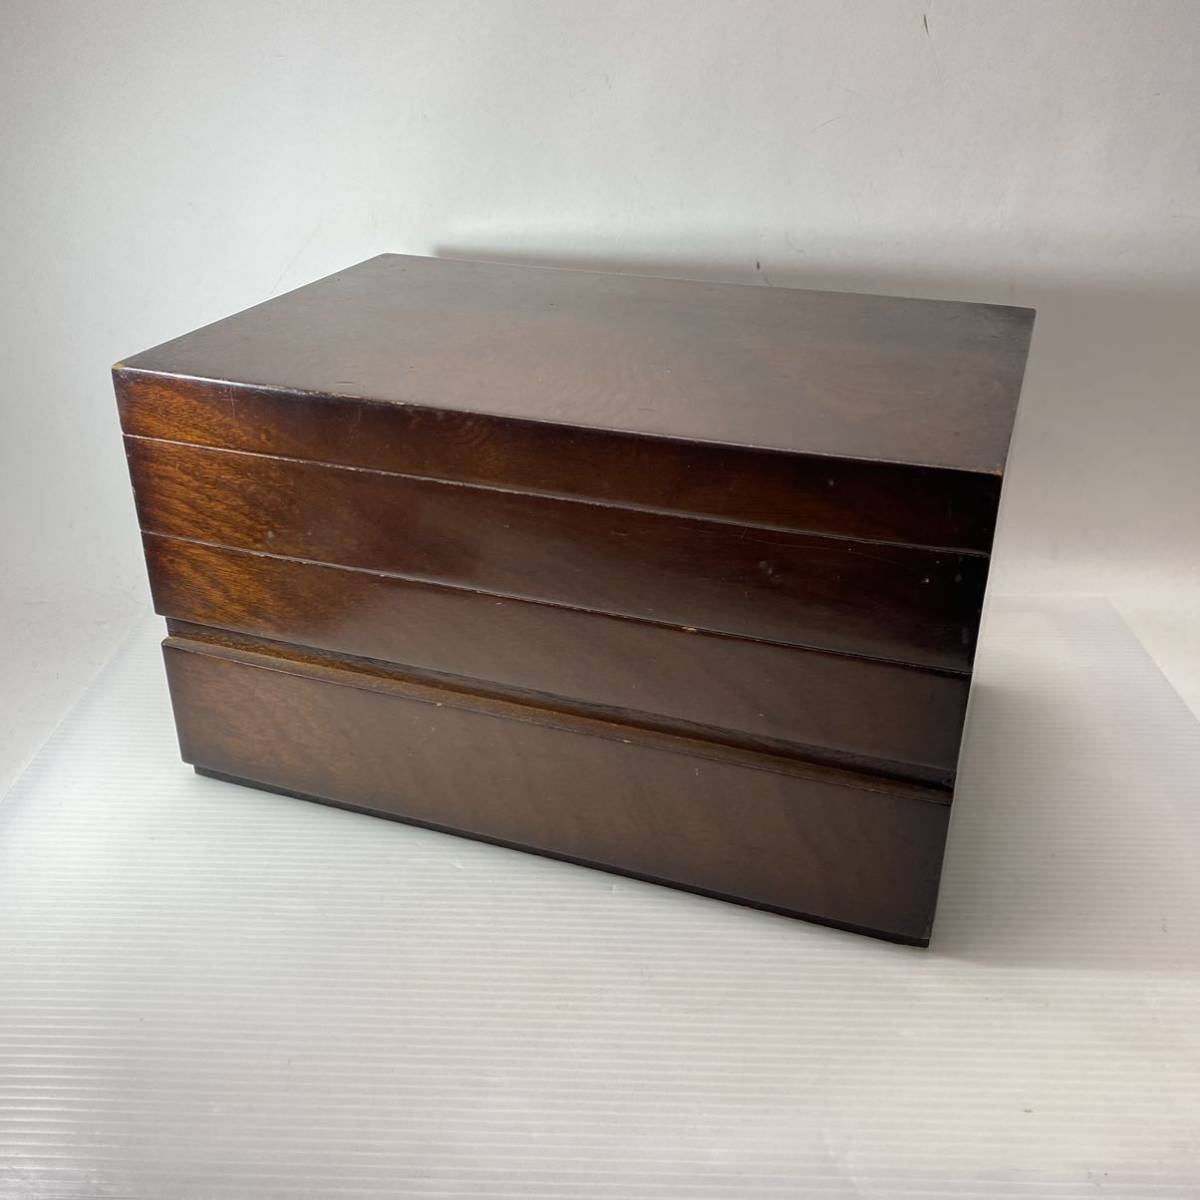 木製 ソーイングボックス 裁縫箱 レトロ 古道具 小物入れ インテリア 飾_画像1